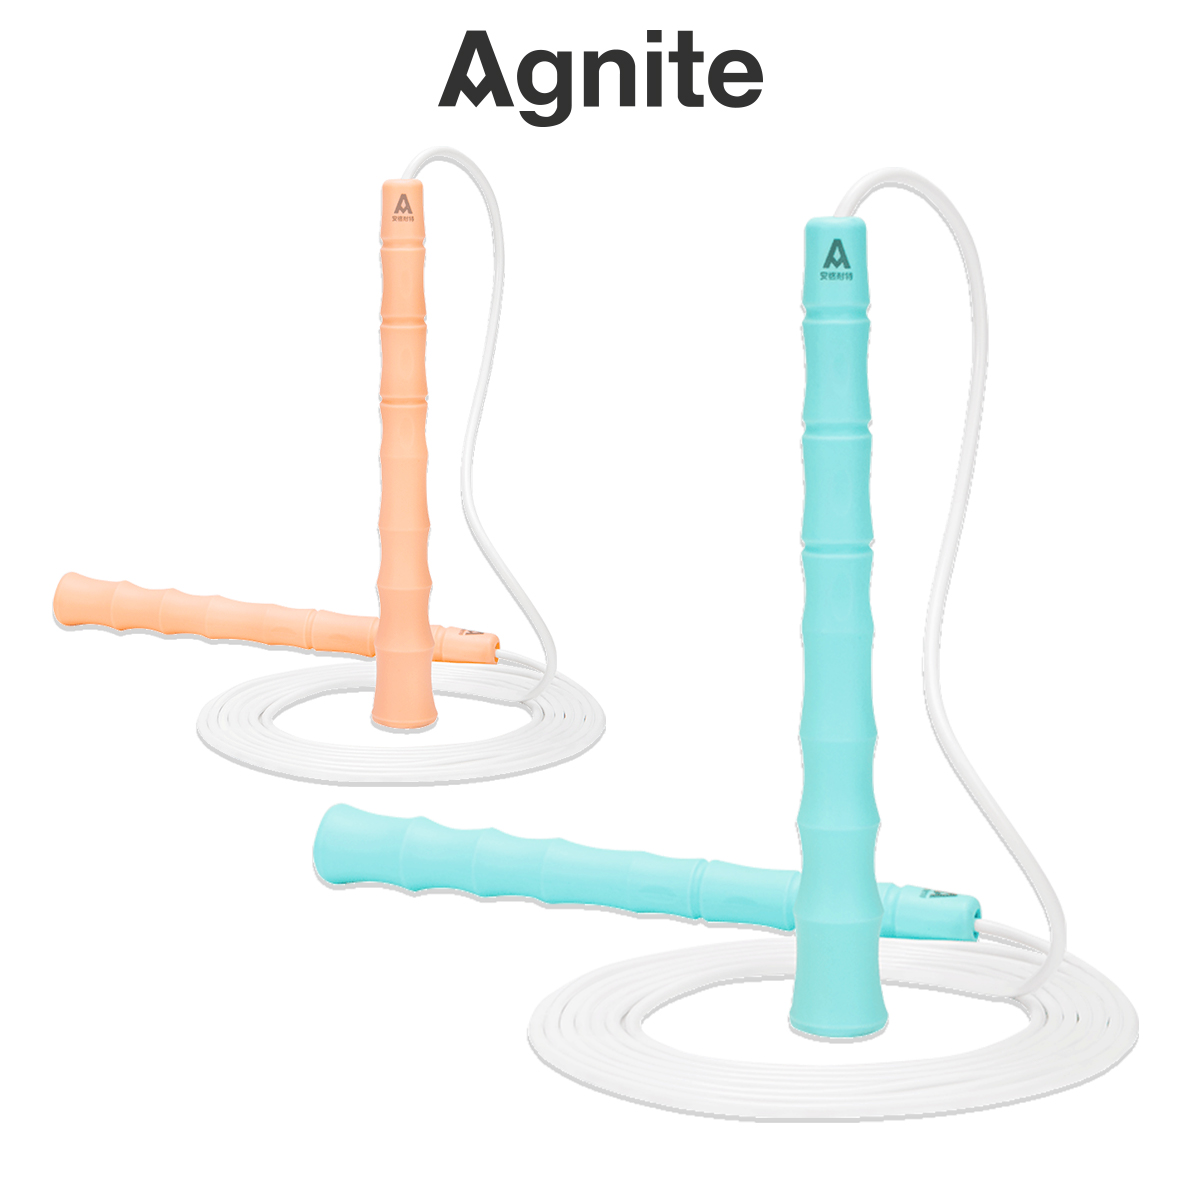 Dây nhảy thể dục thể thao gym dây PVC tay nhựa thiết kế cán tre Agnite - Rèn luyện sức khỏe giảm cân - Hàng Chính Hãng - F4001